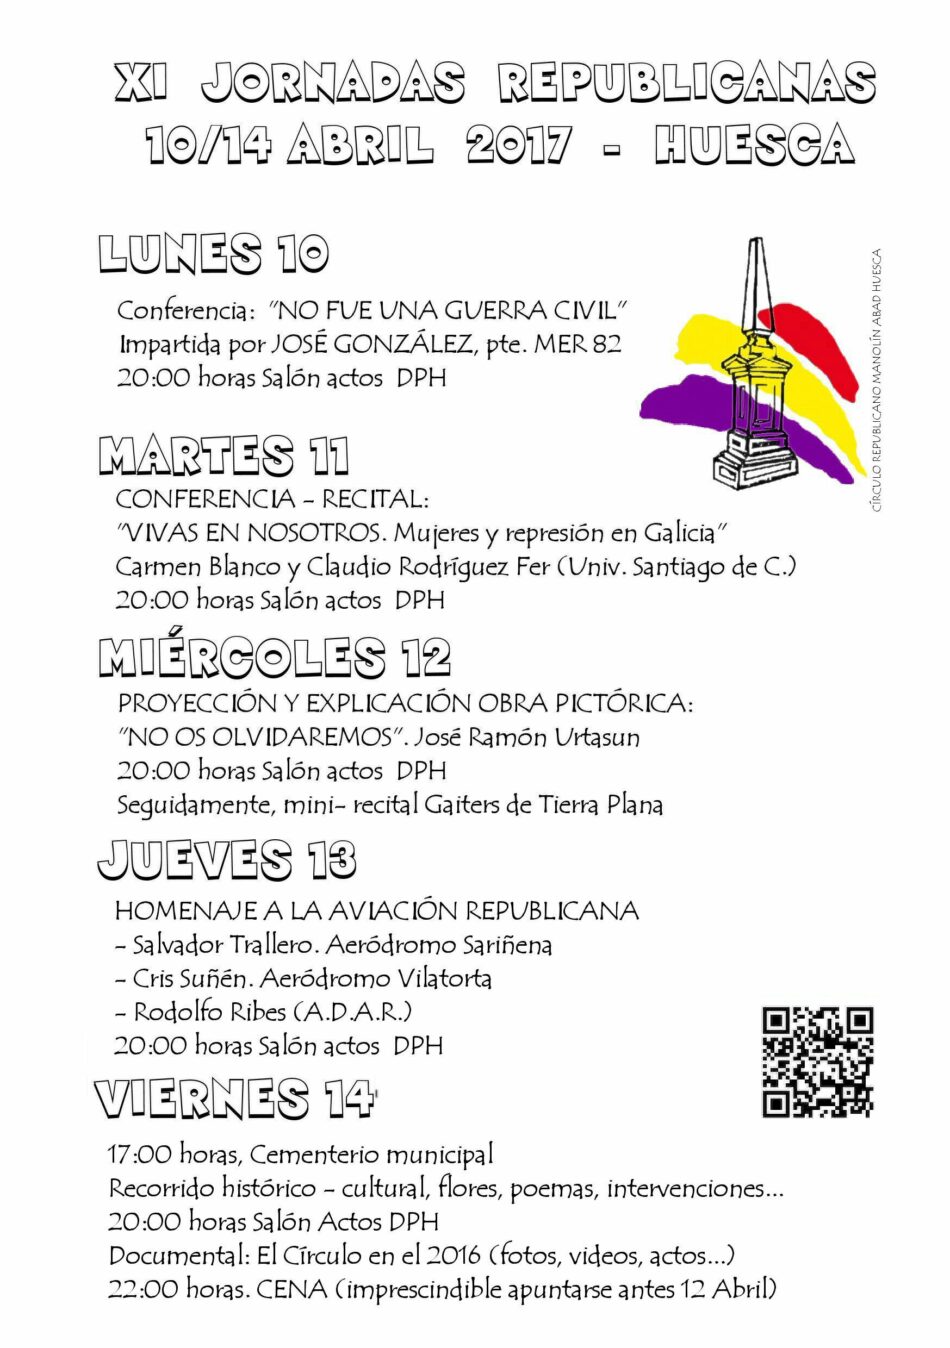 XI Jornadas culturales Republicanas en Huesca